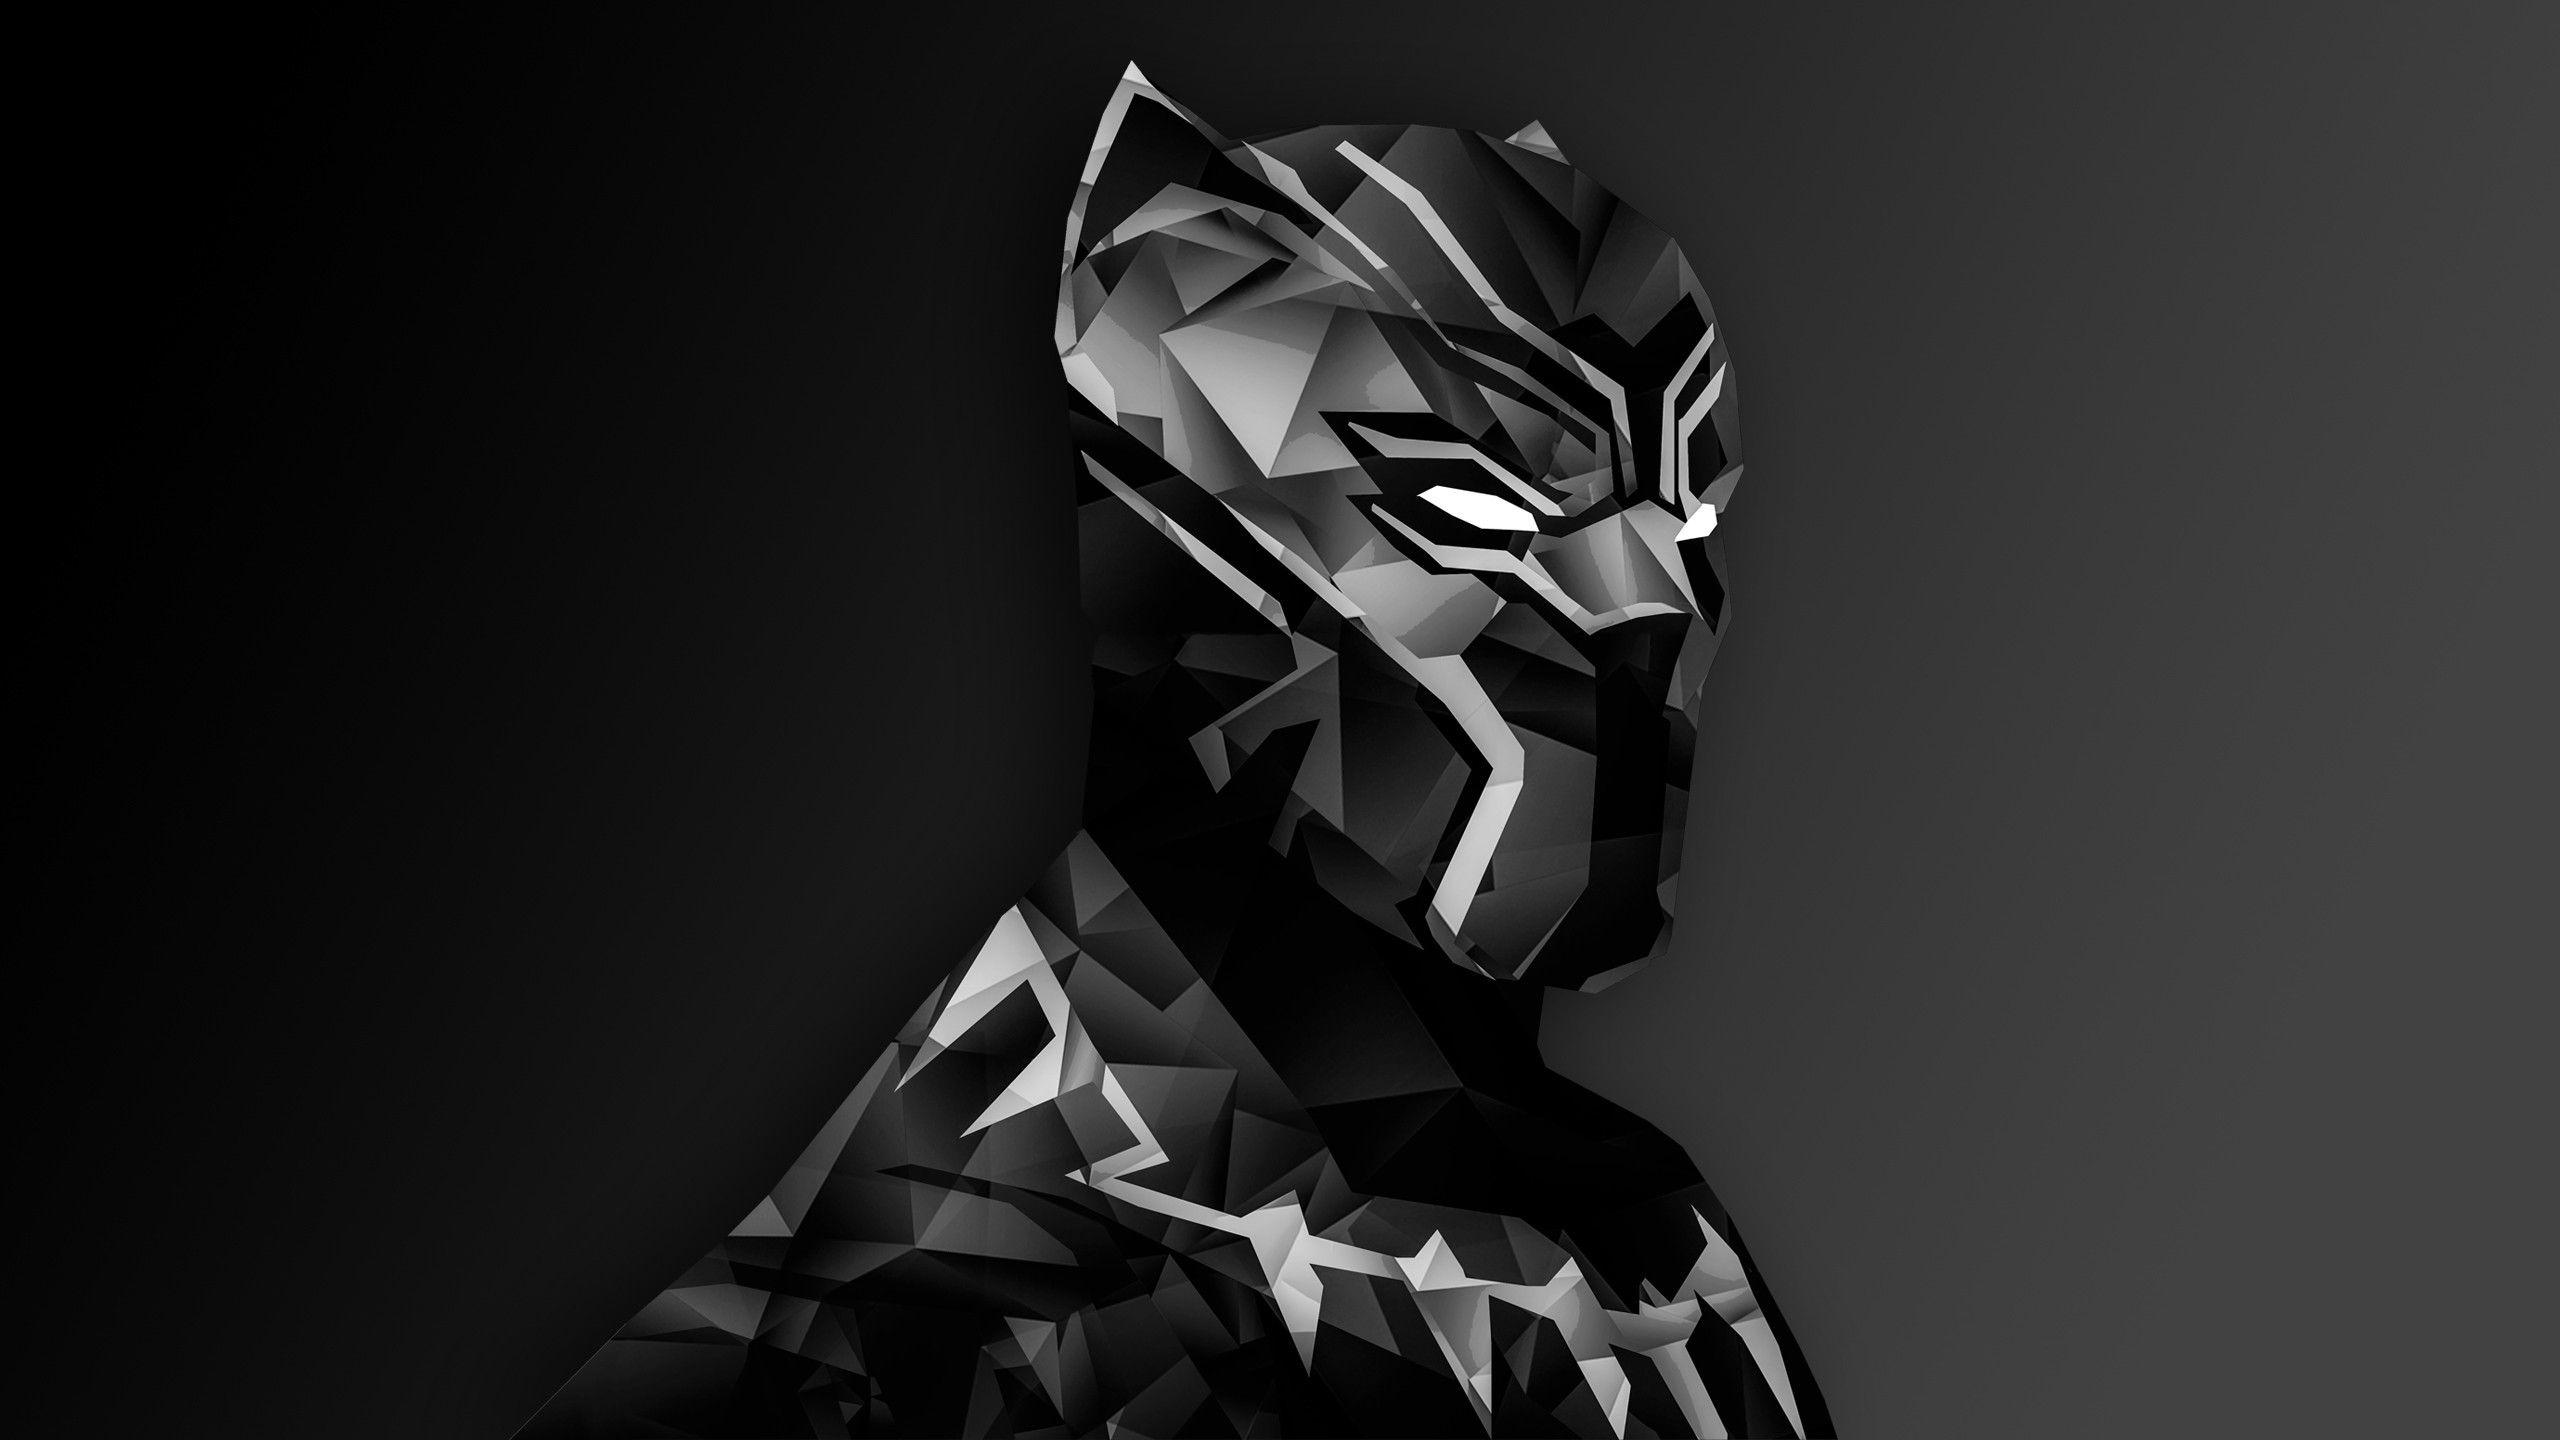 Black Panther Wallpaper Free Black Panther Background